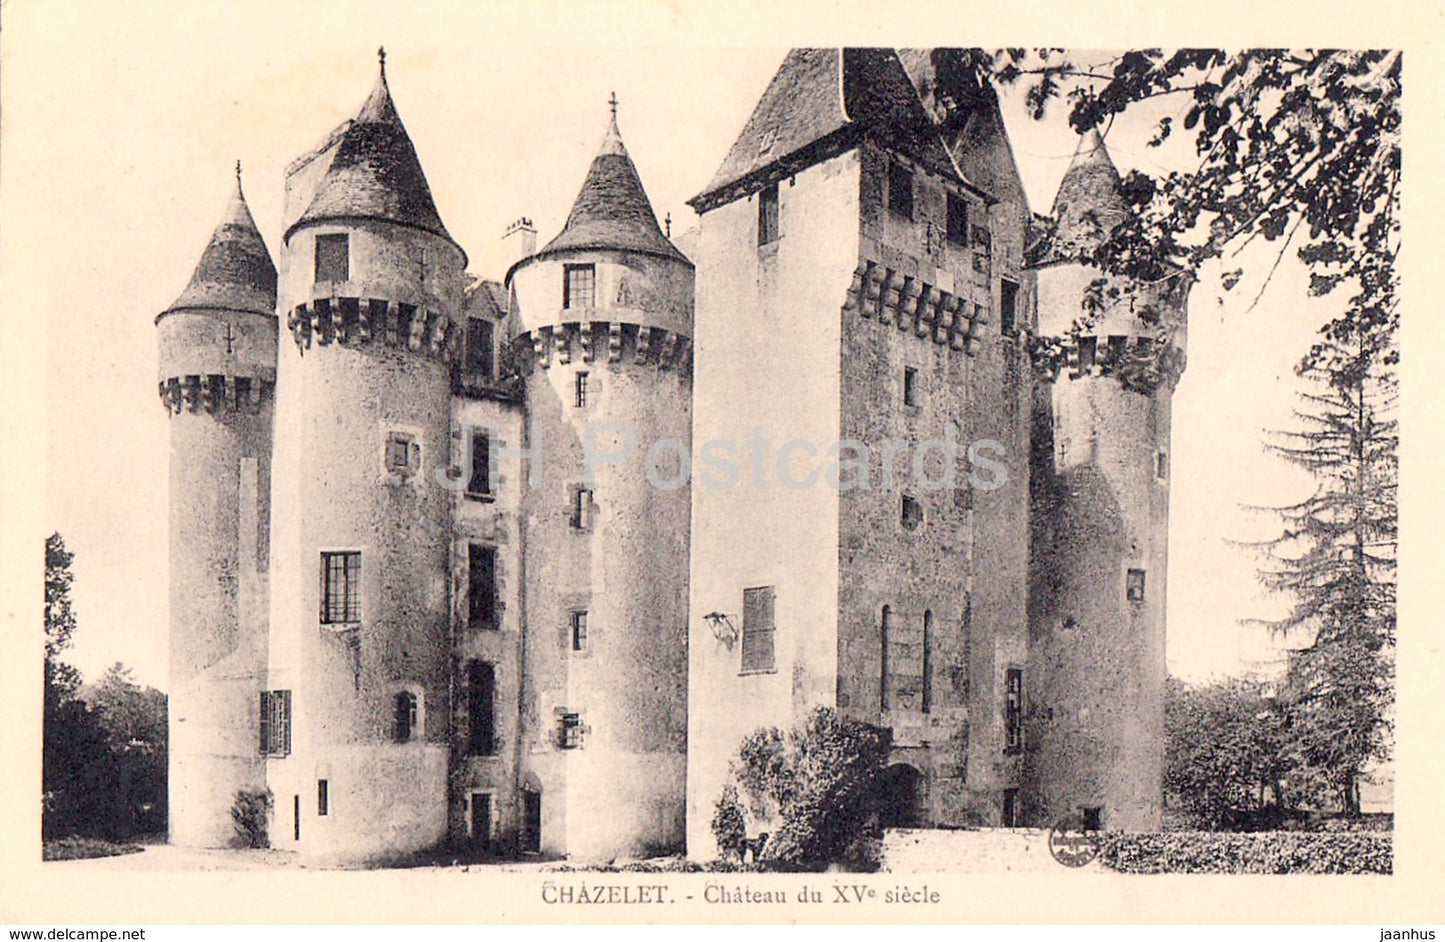 Chazelet - Chateau du XVe siecle - Albanse Laforet - castle - old postcard - France - unused - JH Postcards